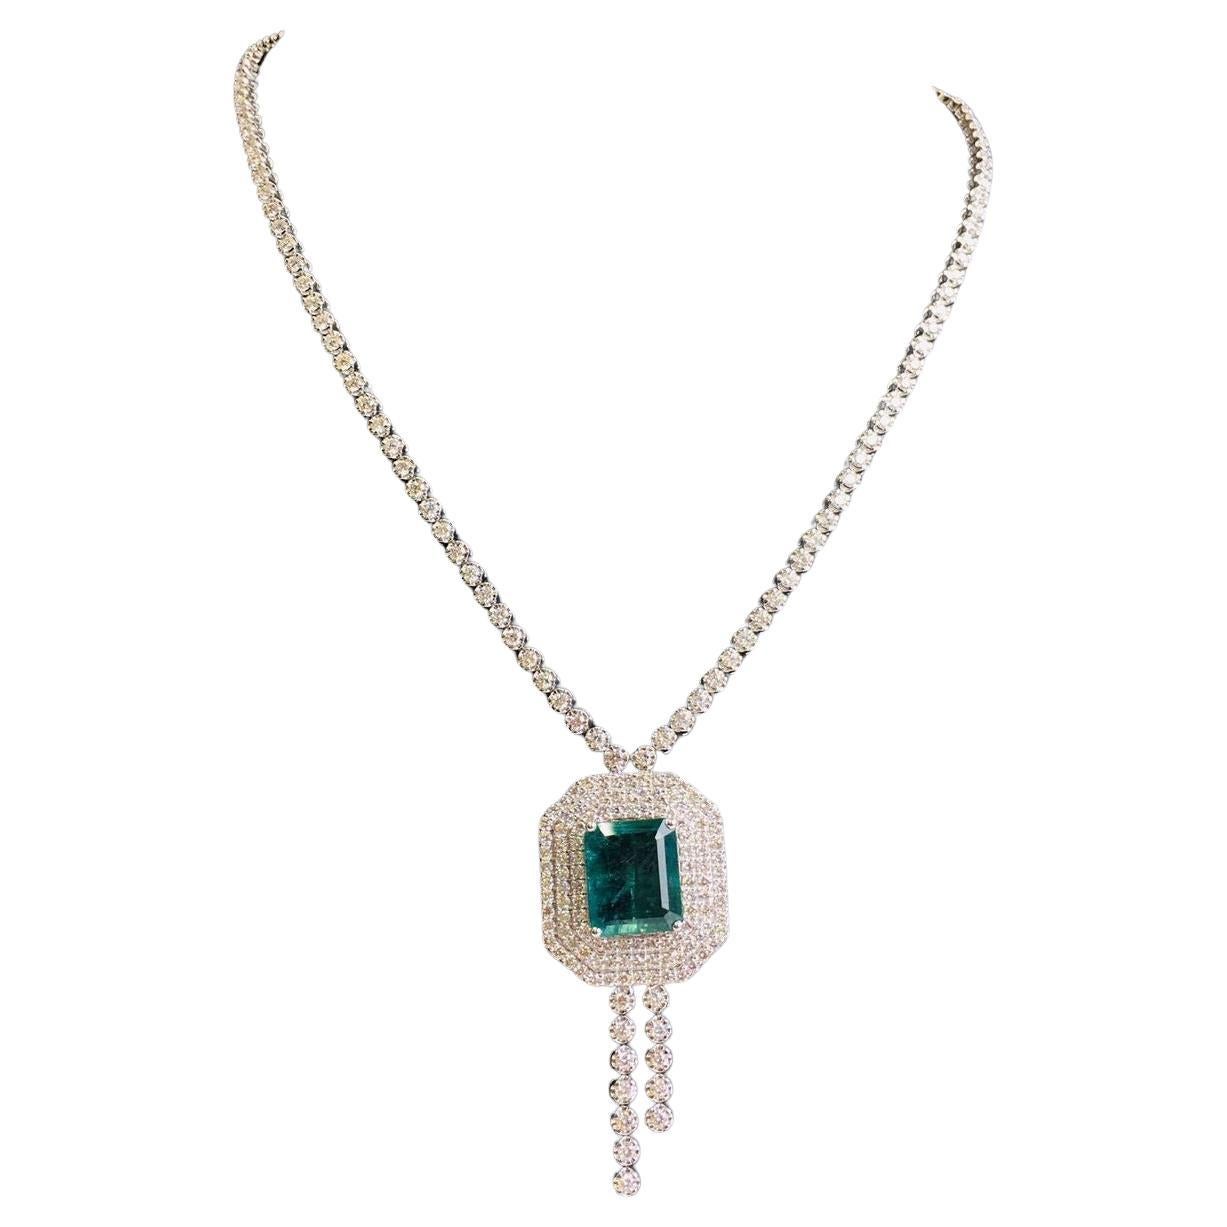 Emerald Cut 15 Carat Green Emerald Diamond Pendant Necklace For Sale